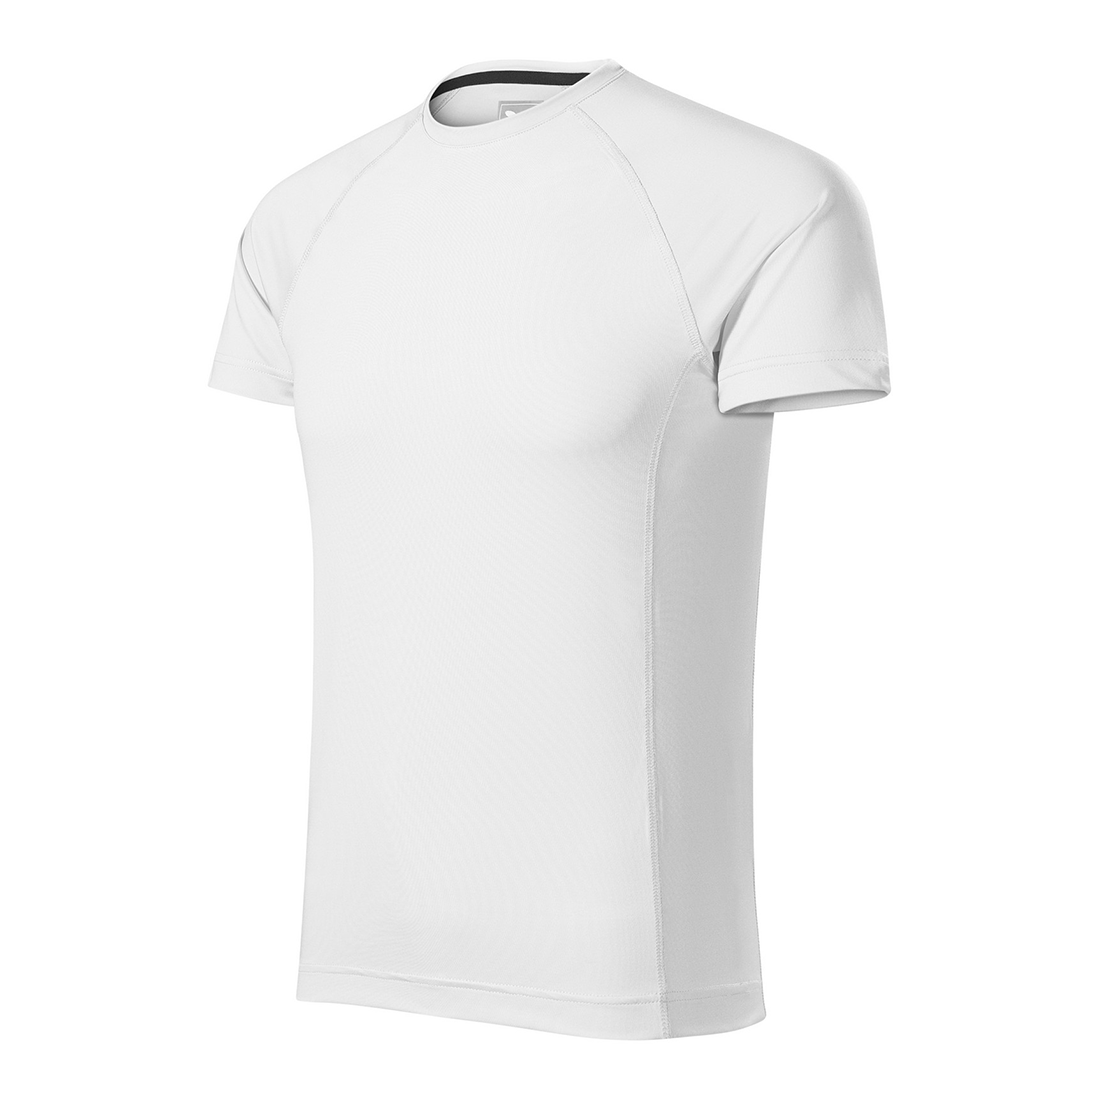 Tee-shirt homme DESTINY - Les vêtements de protection